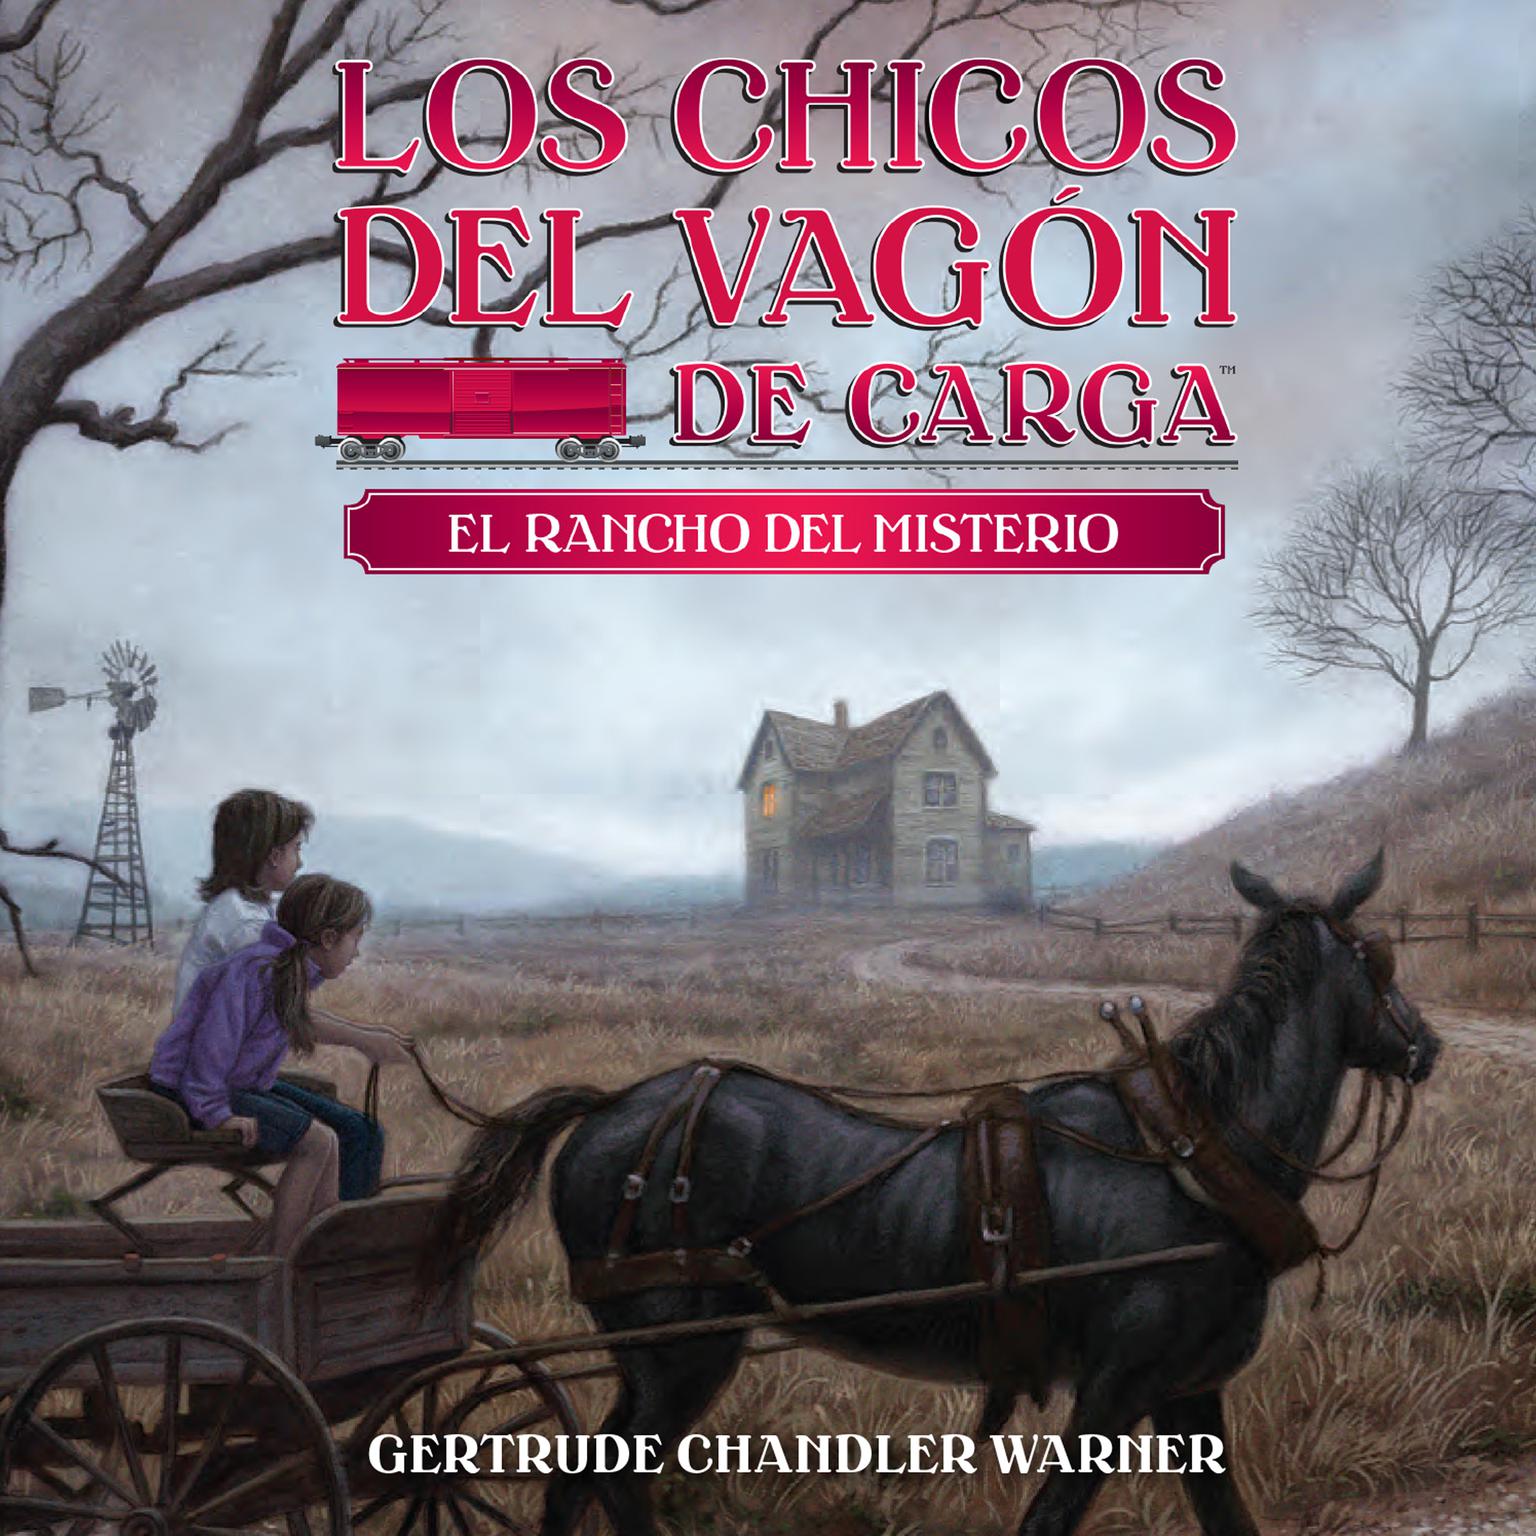 El rancho del misterio (Spanish Edition) Audiobook, by Gertrude Chandler Warner